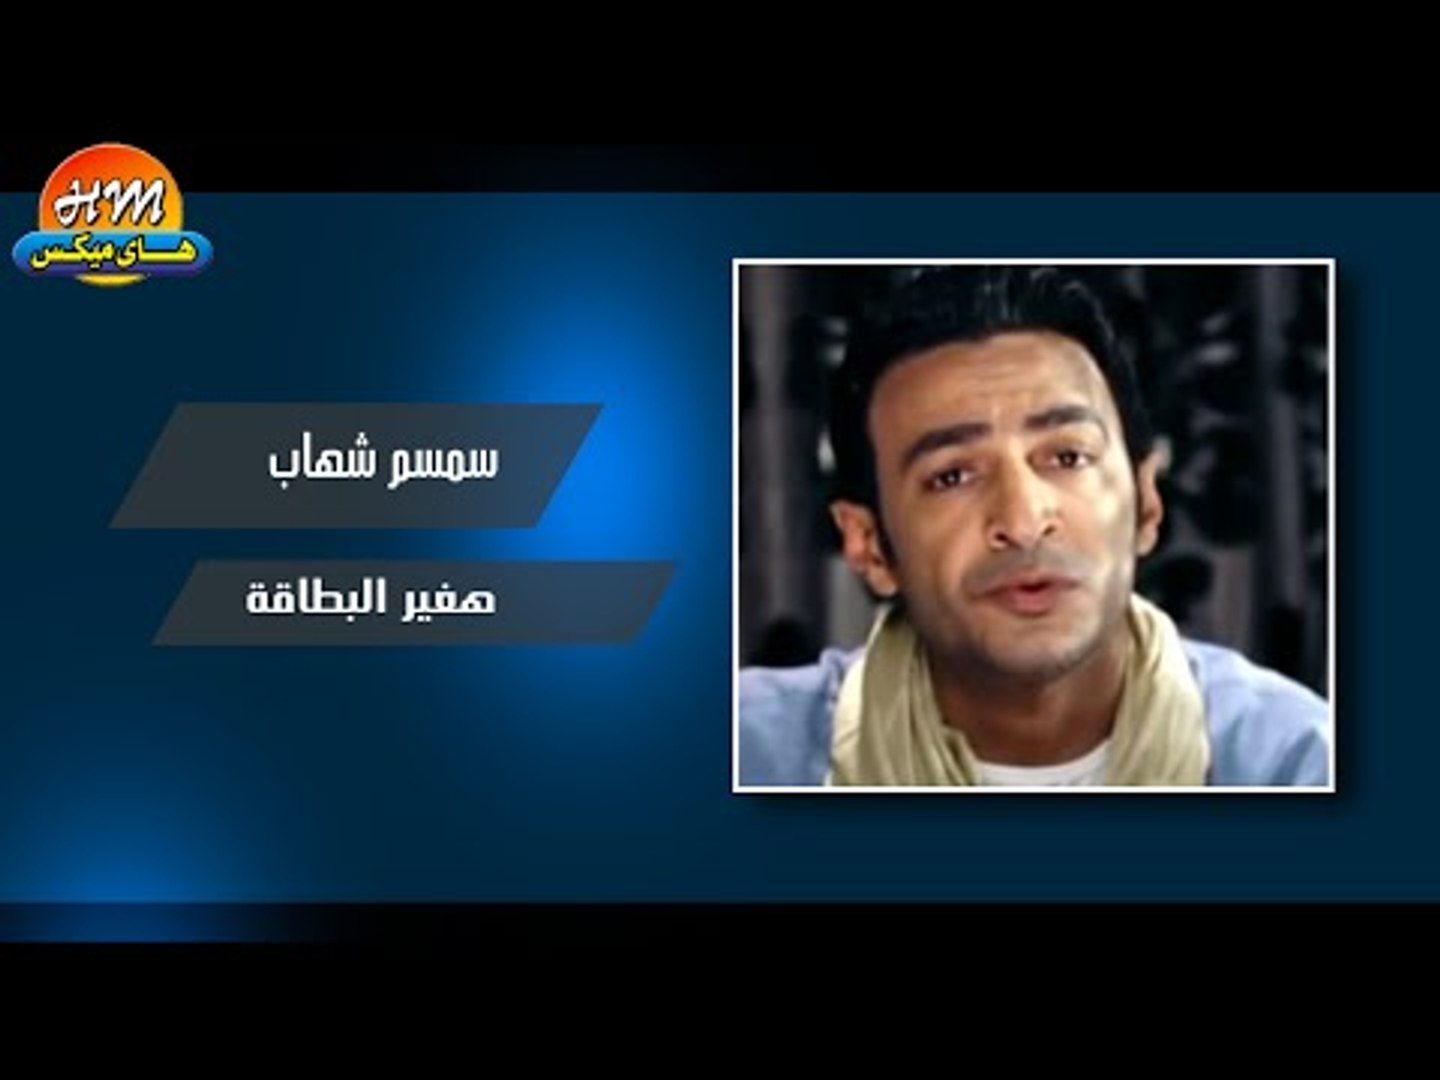 سمسم شهاب - هغير البطاقة / Smsm Shihab - Haghir Elbtaa - video Dailymotion